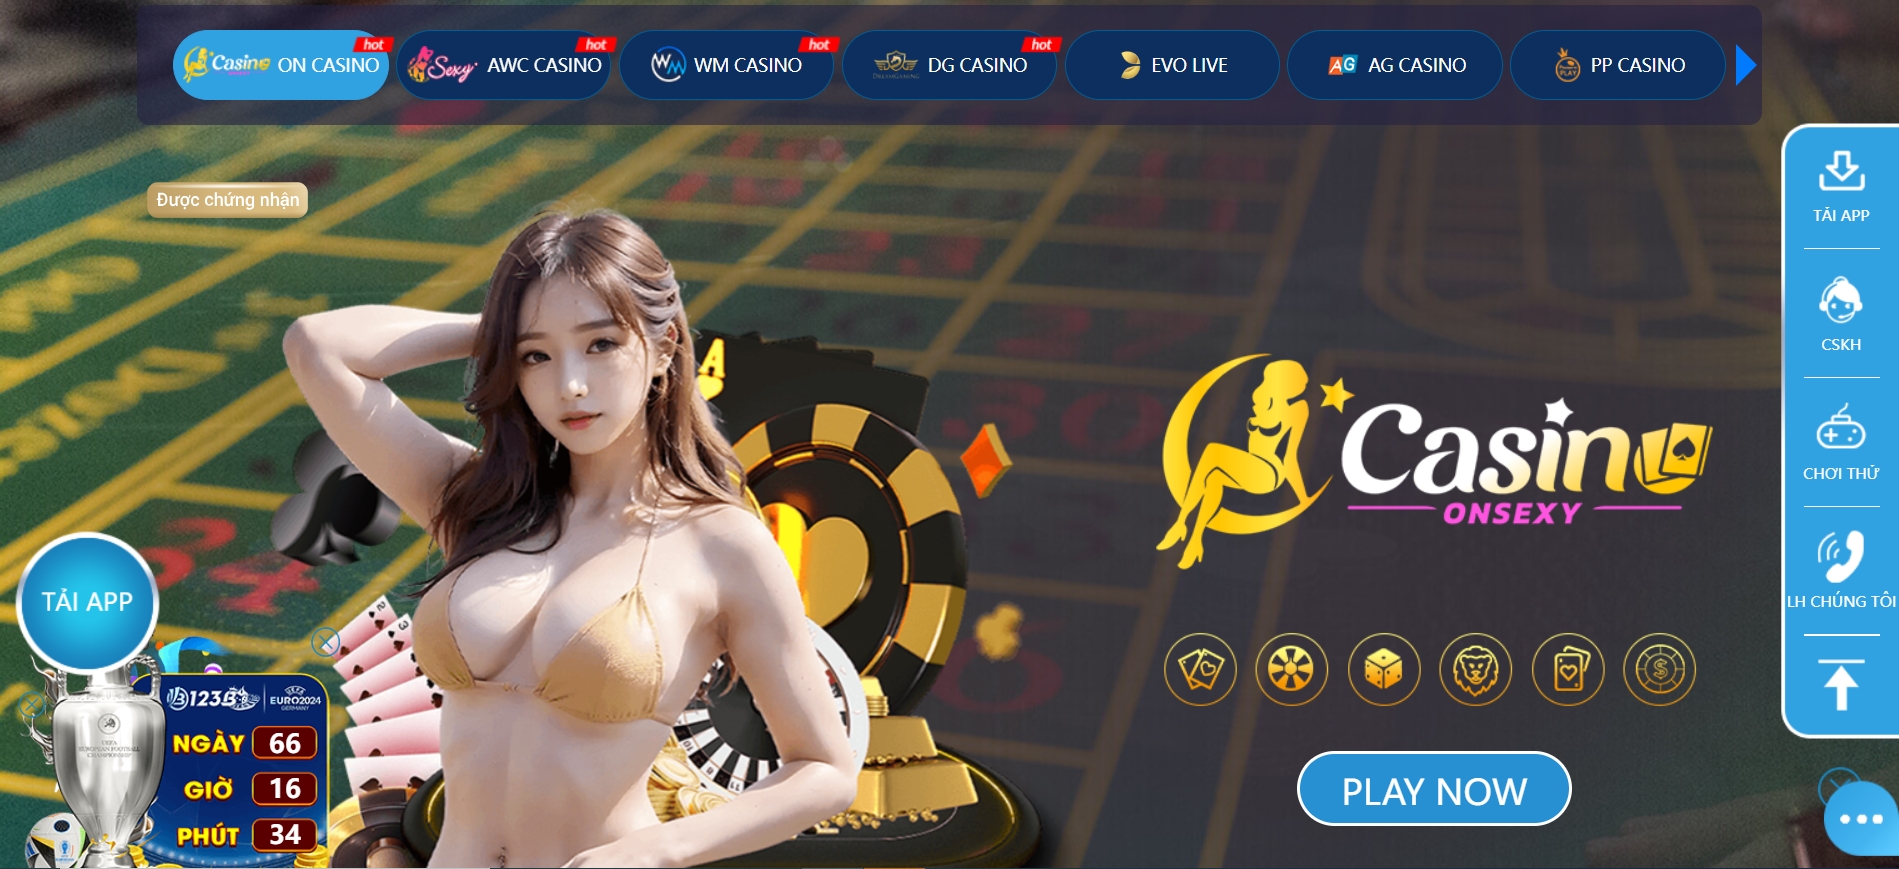 Chi tiết về địa chỉ chơi casino online 123b